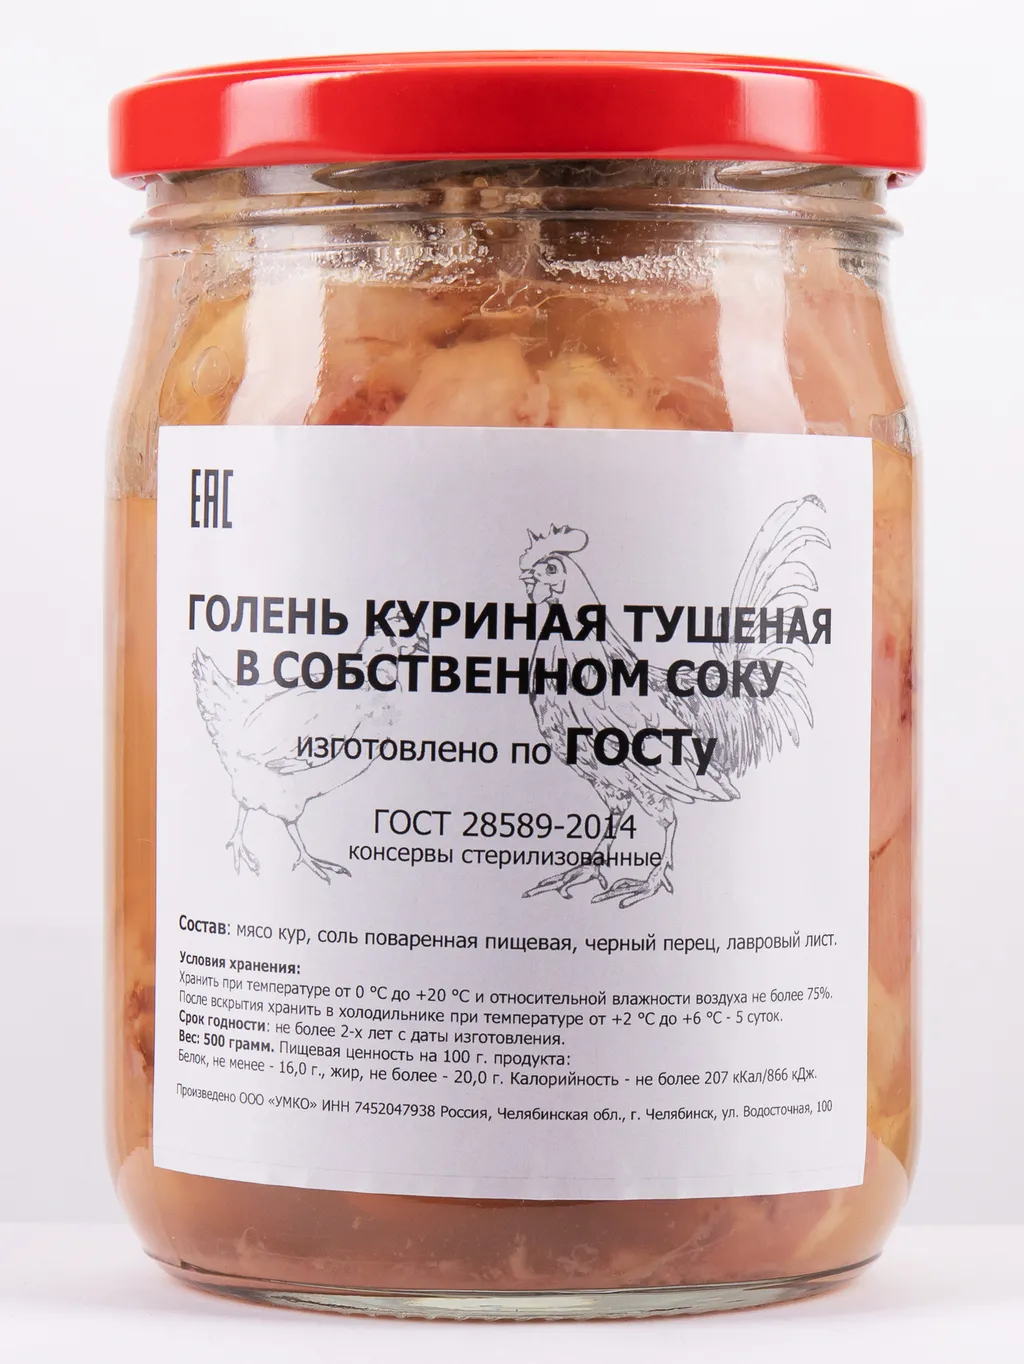 мясо куриное в собственном соку (Филе) в Челябинске и Челябинской области 3